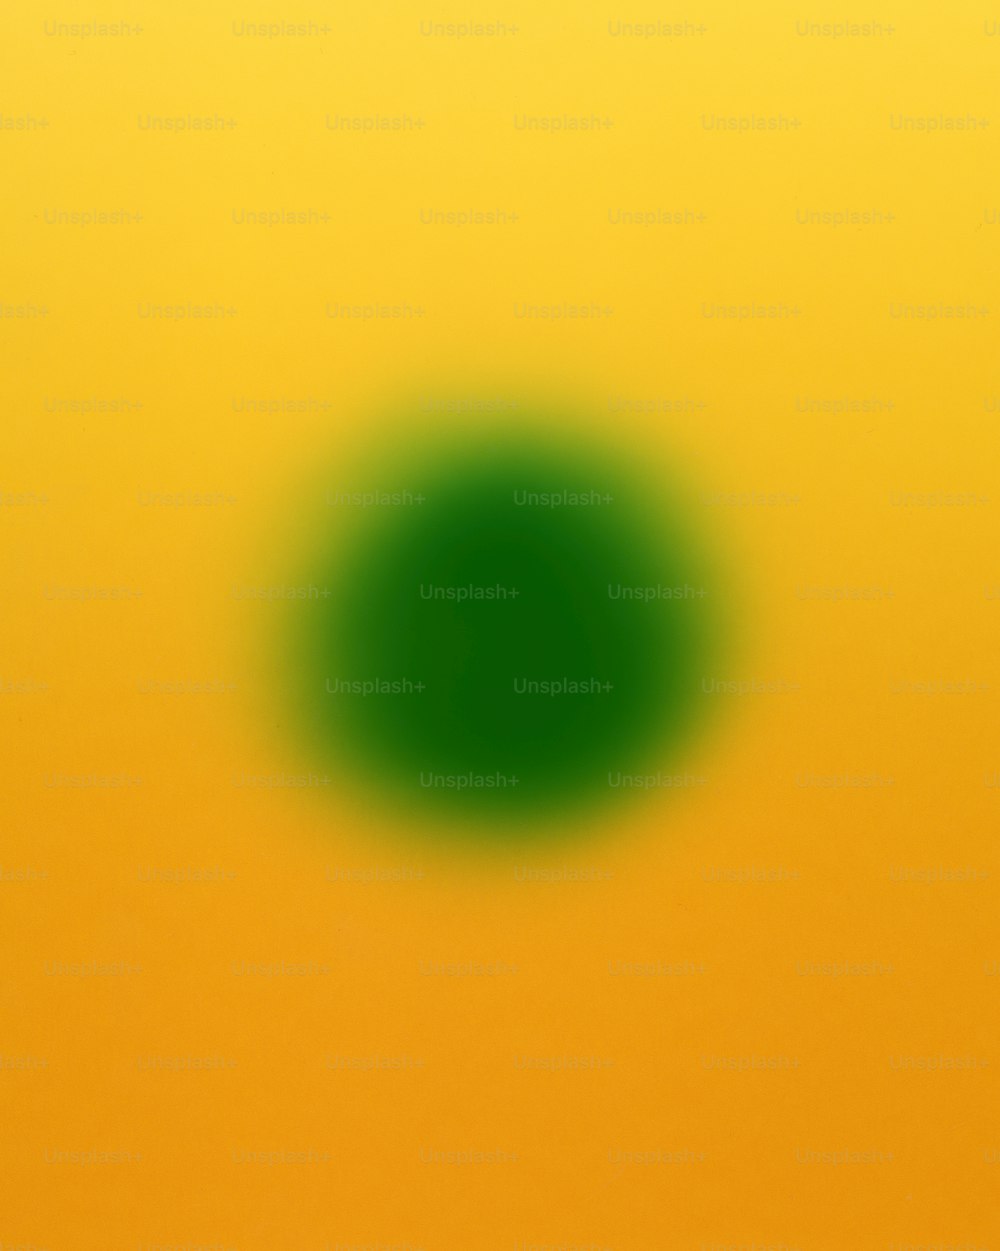 黄色の背景に緑色の円